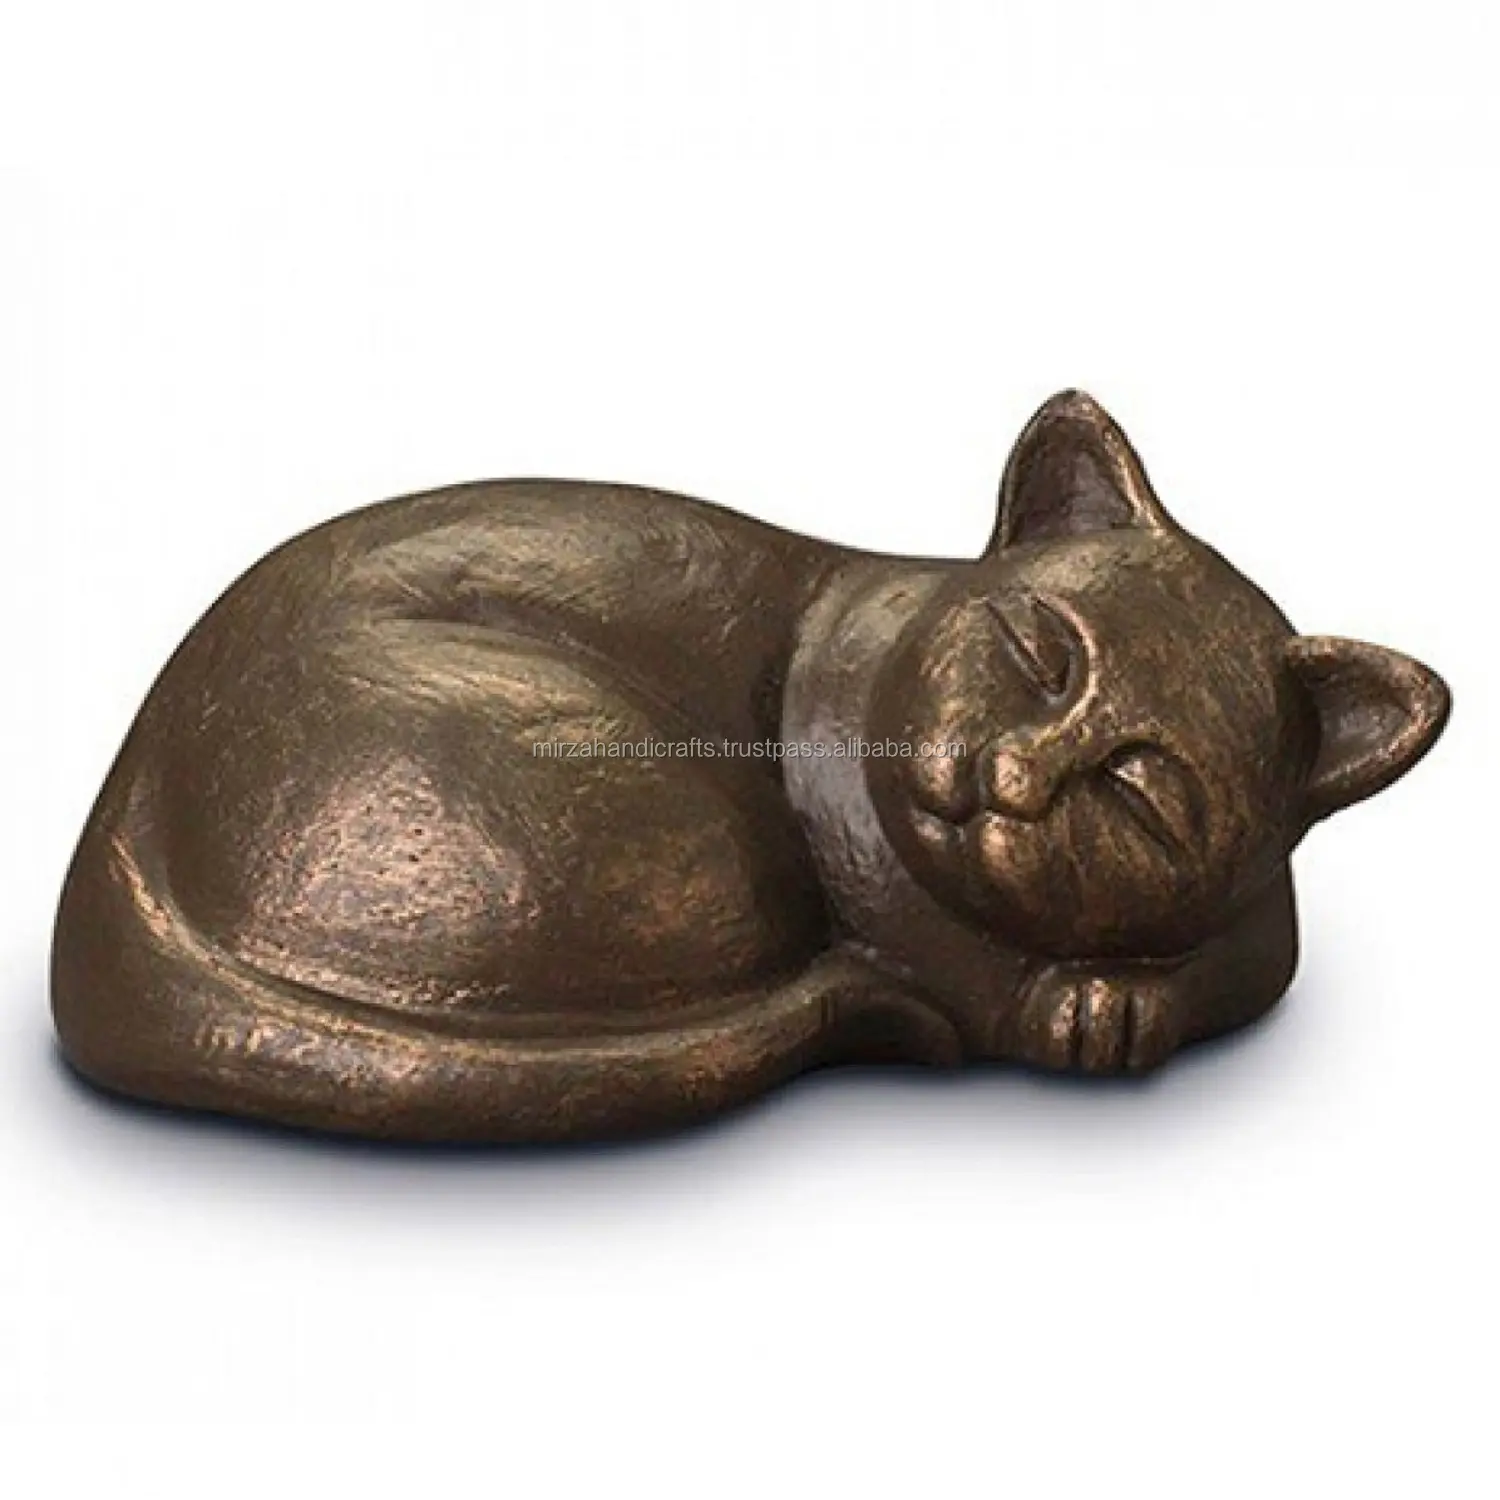 सो कांस्य बिल्ली अंतिम संस्कार कलश पालतू बिल्ली राख बड़े बिल्ली Urns के लिए सुरक्षित कच्चा लोहा